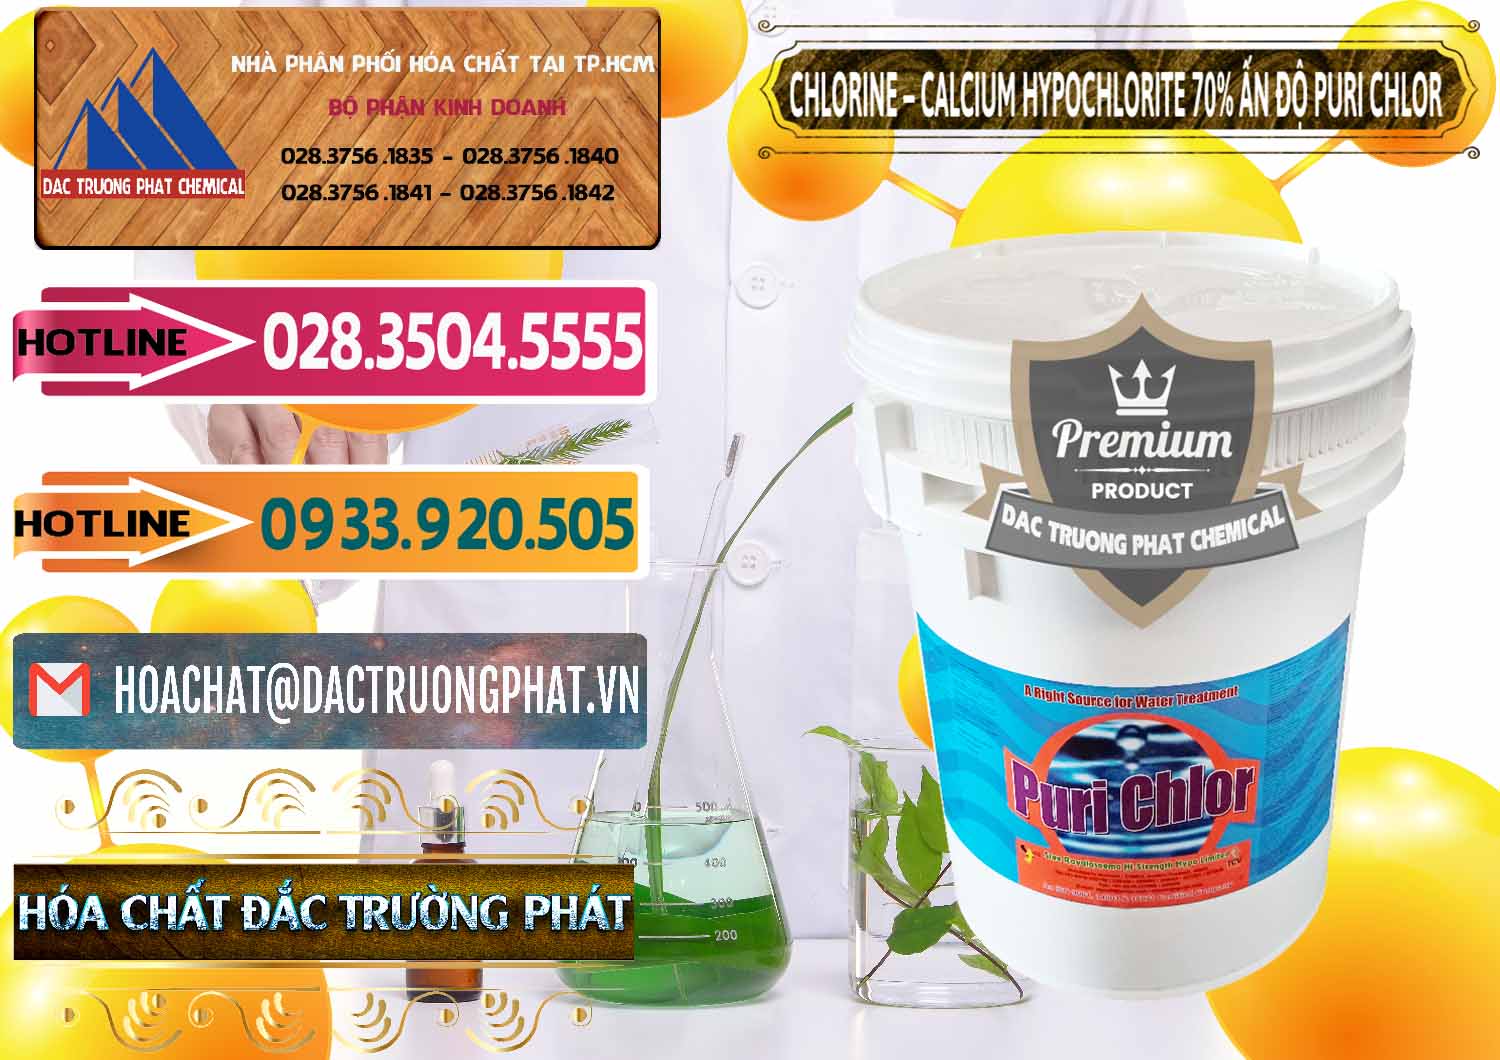 Chuyên cung ứng & bán Chlorine – Clorin 70% Puri Chlo Ấn Độ India - 0123 - Cty chuyên phân phối - nhập khẩu hóa chất tại TP.HCM - dactruongphat.vn